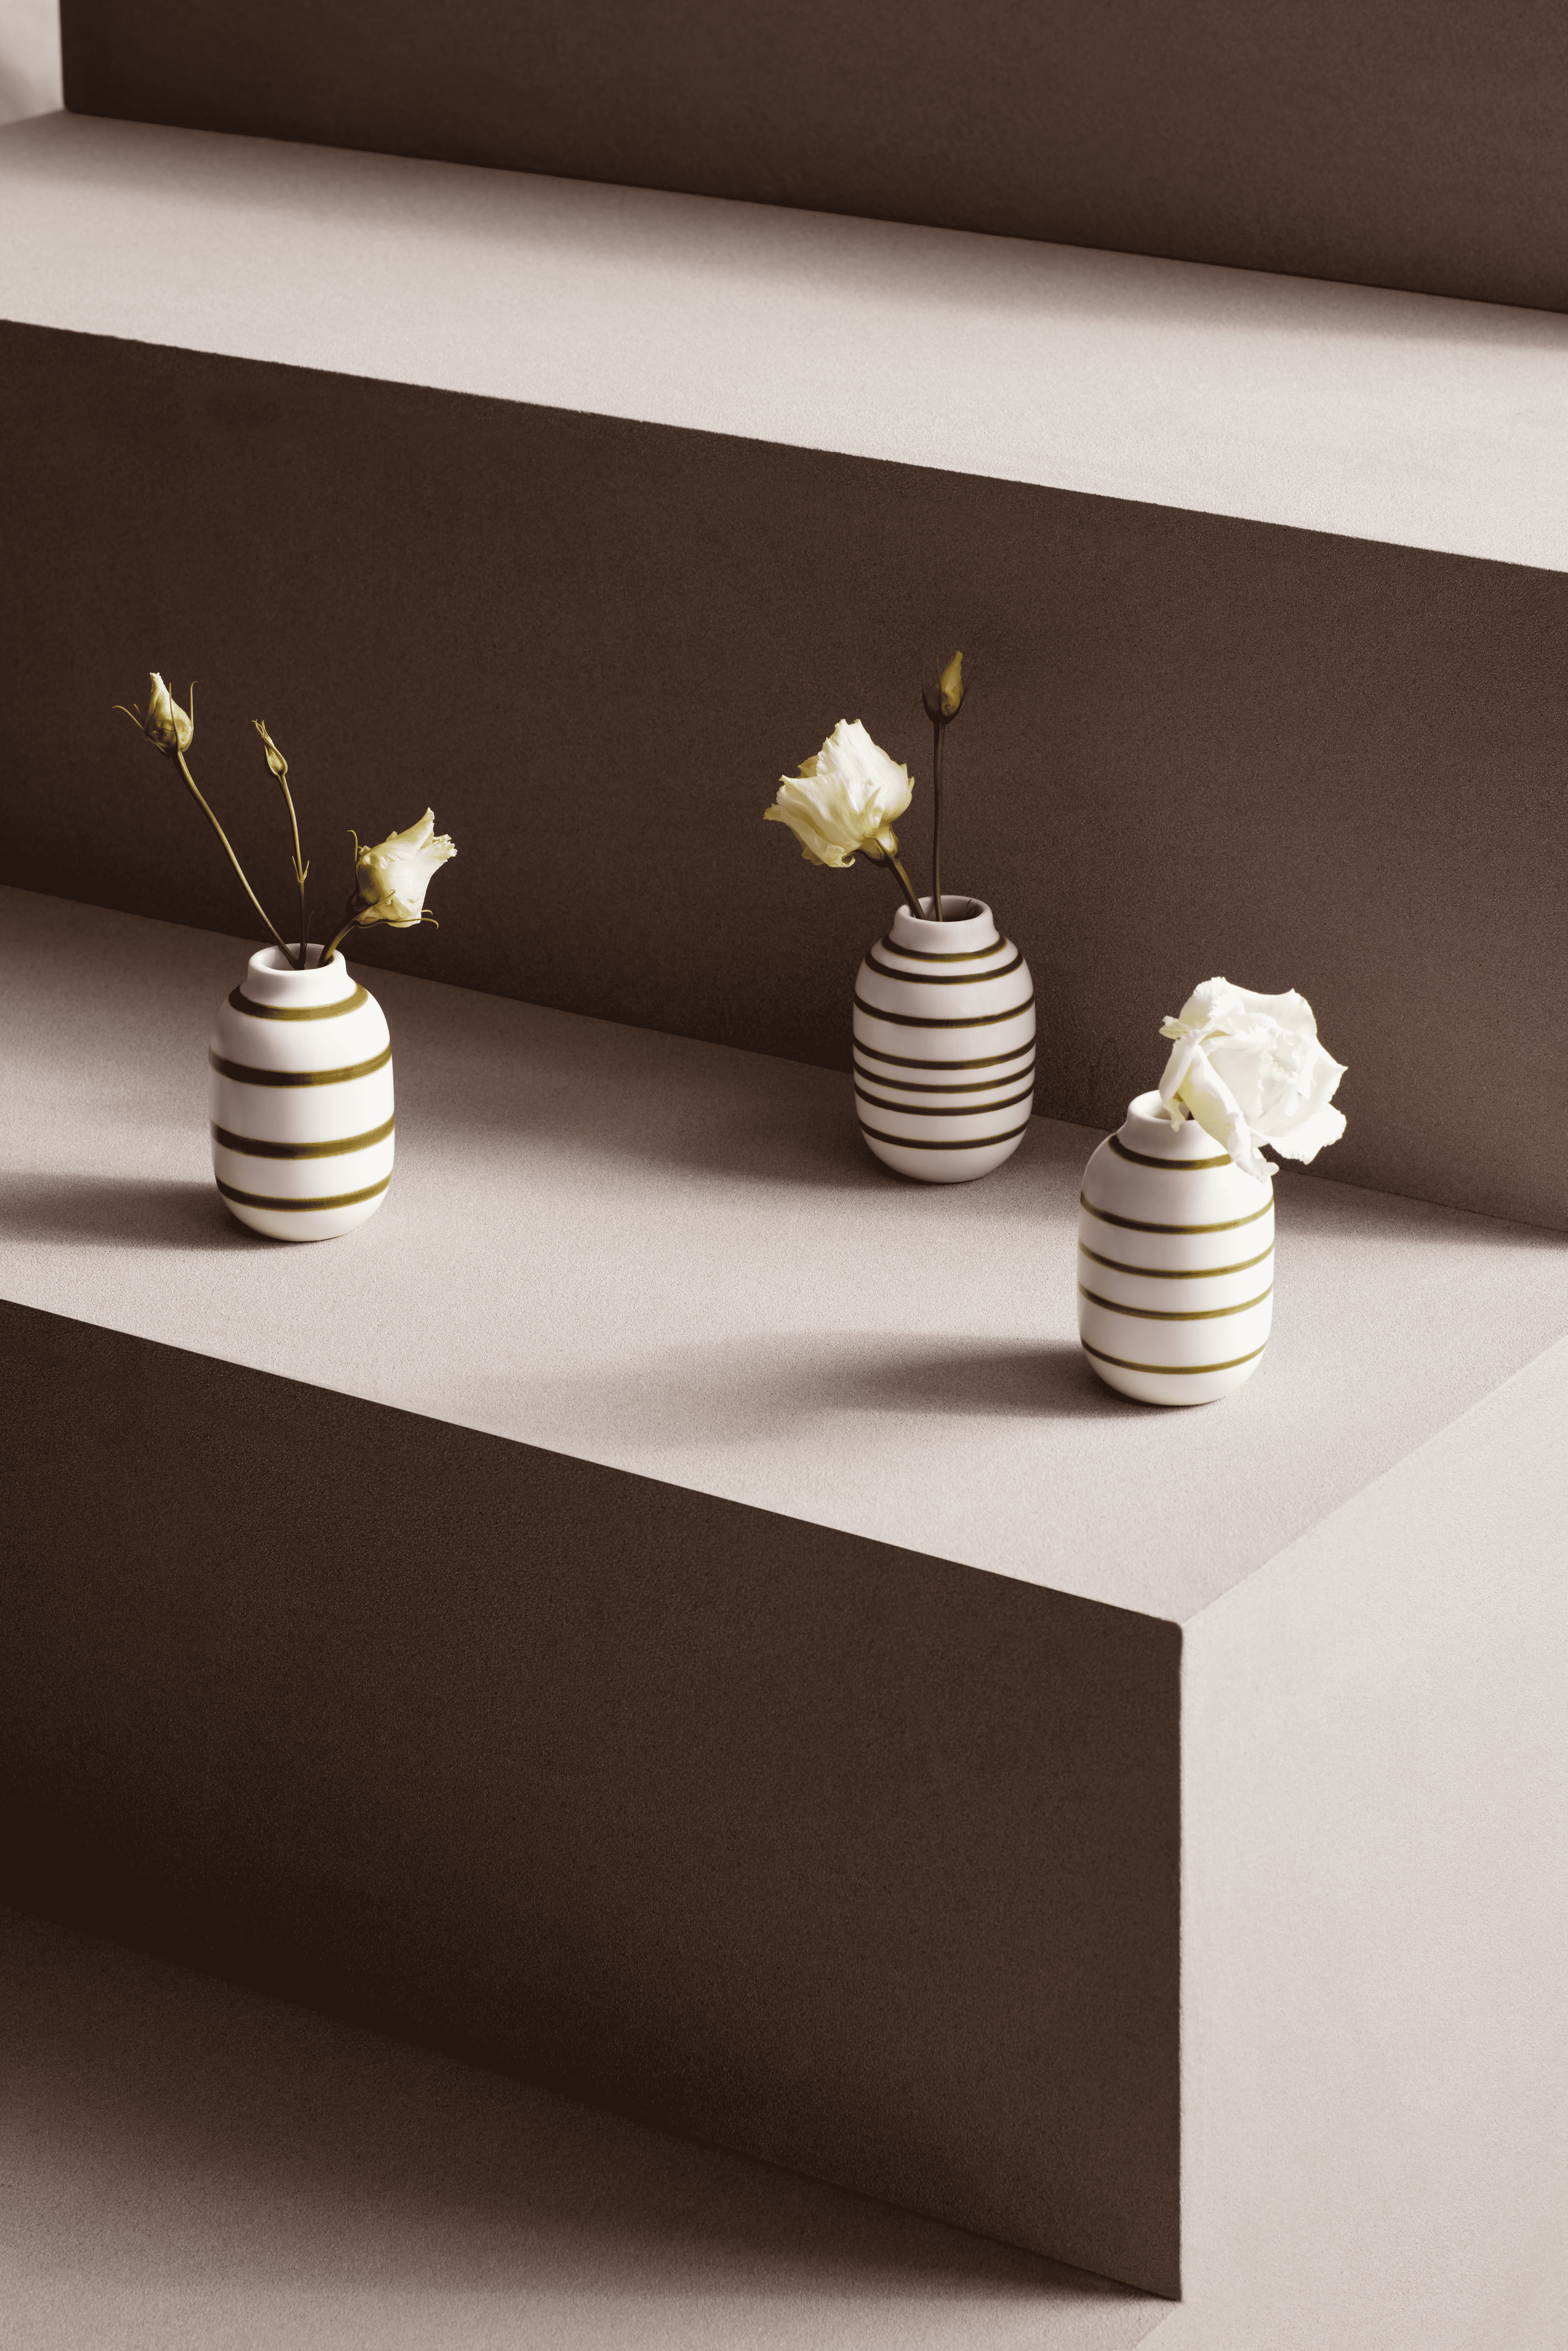 Vase miniature 3 pcs.